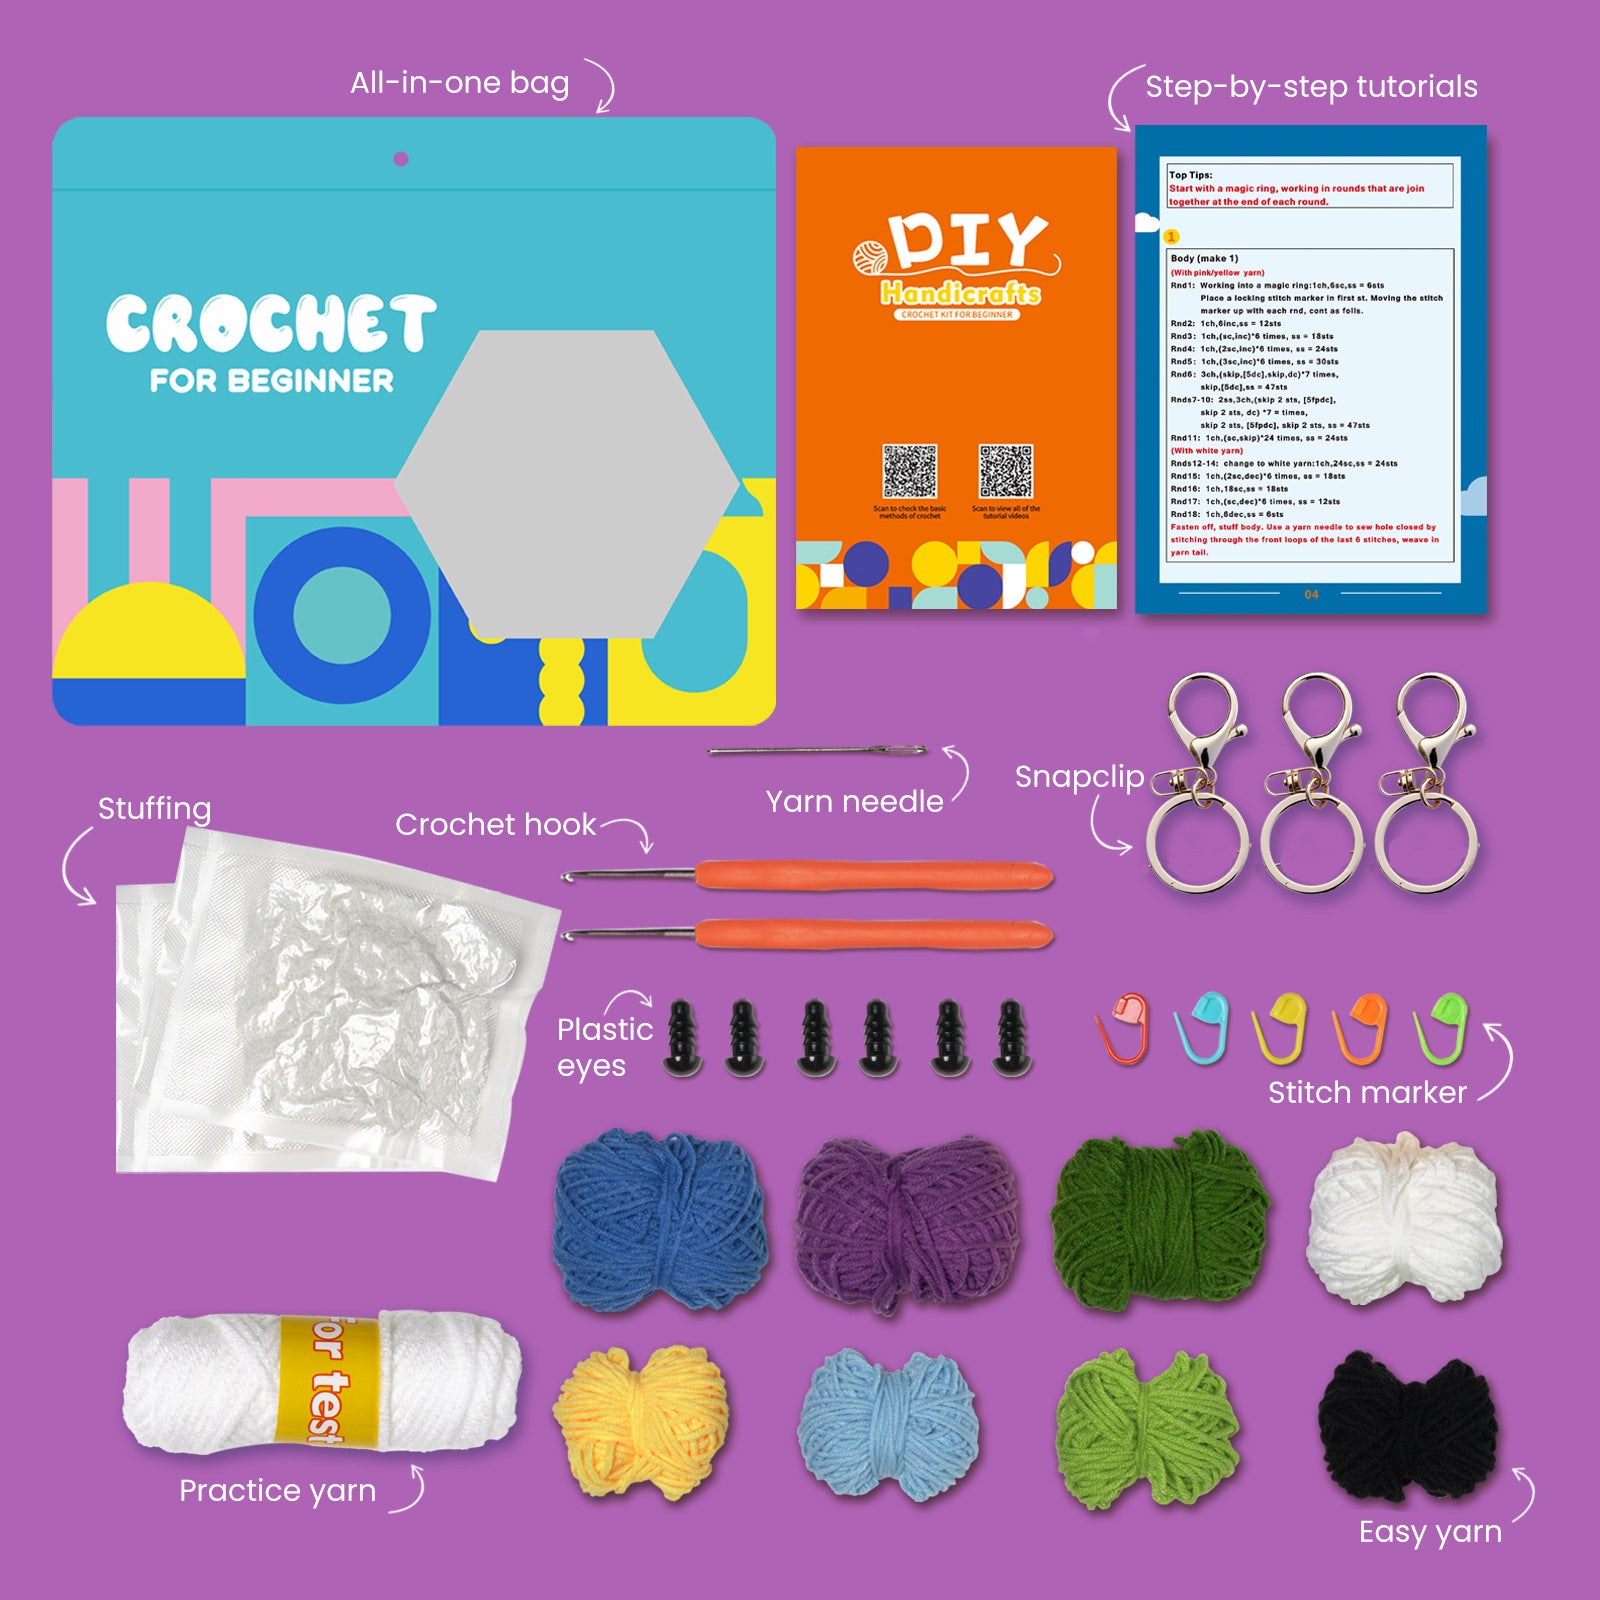 Flower Pot Set Crochet Kit – OTTEBERRY'S